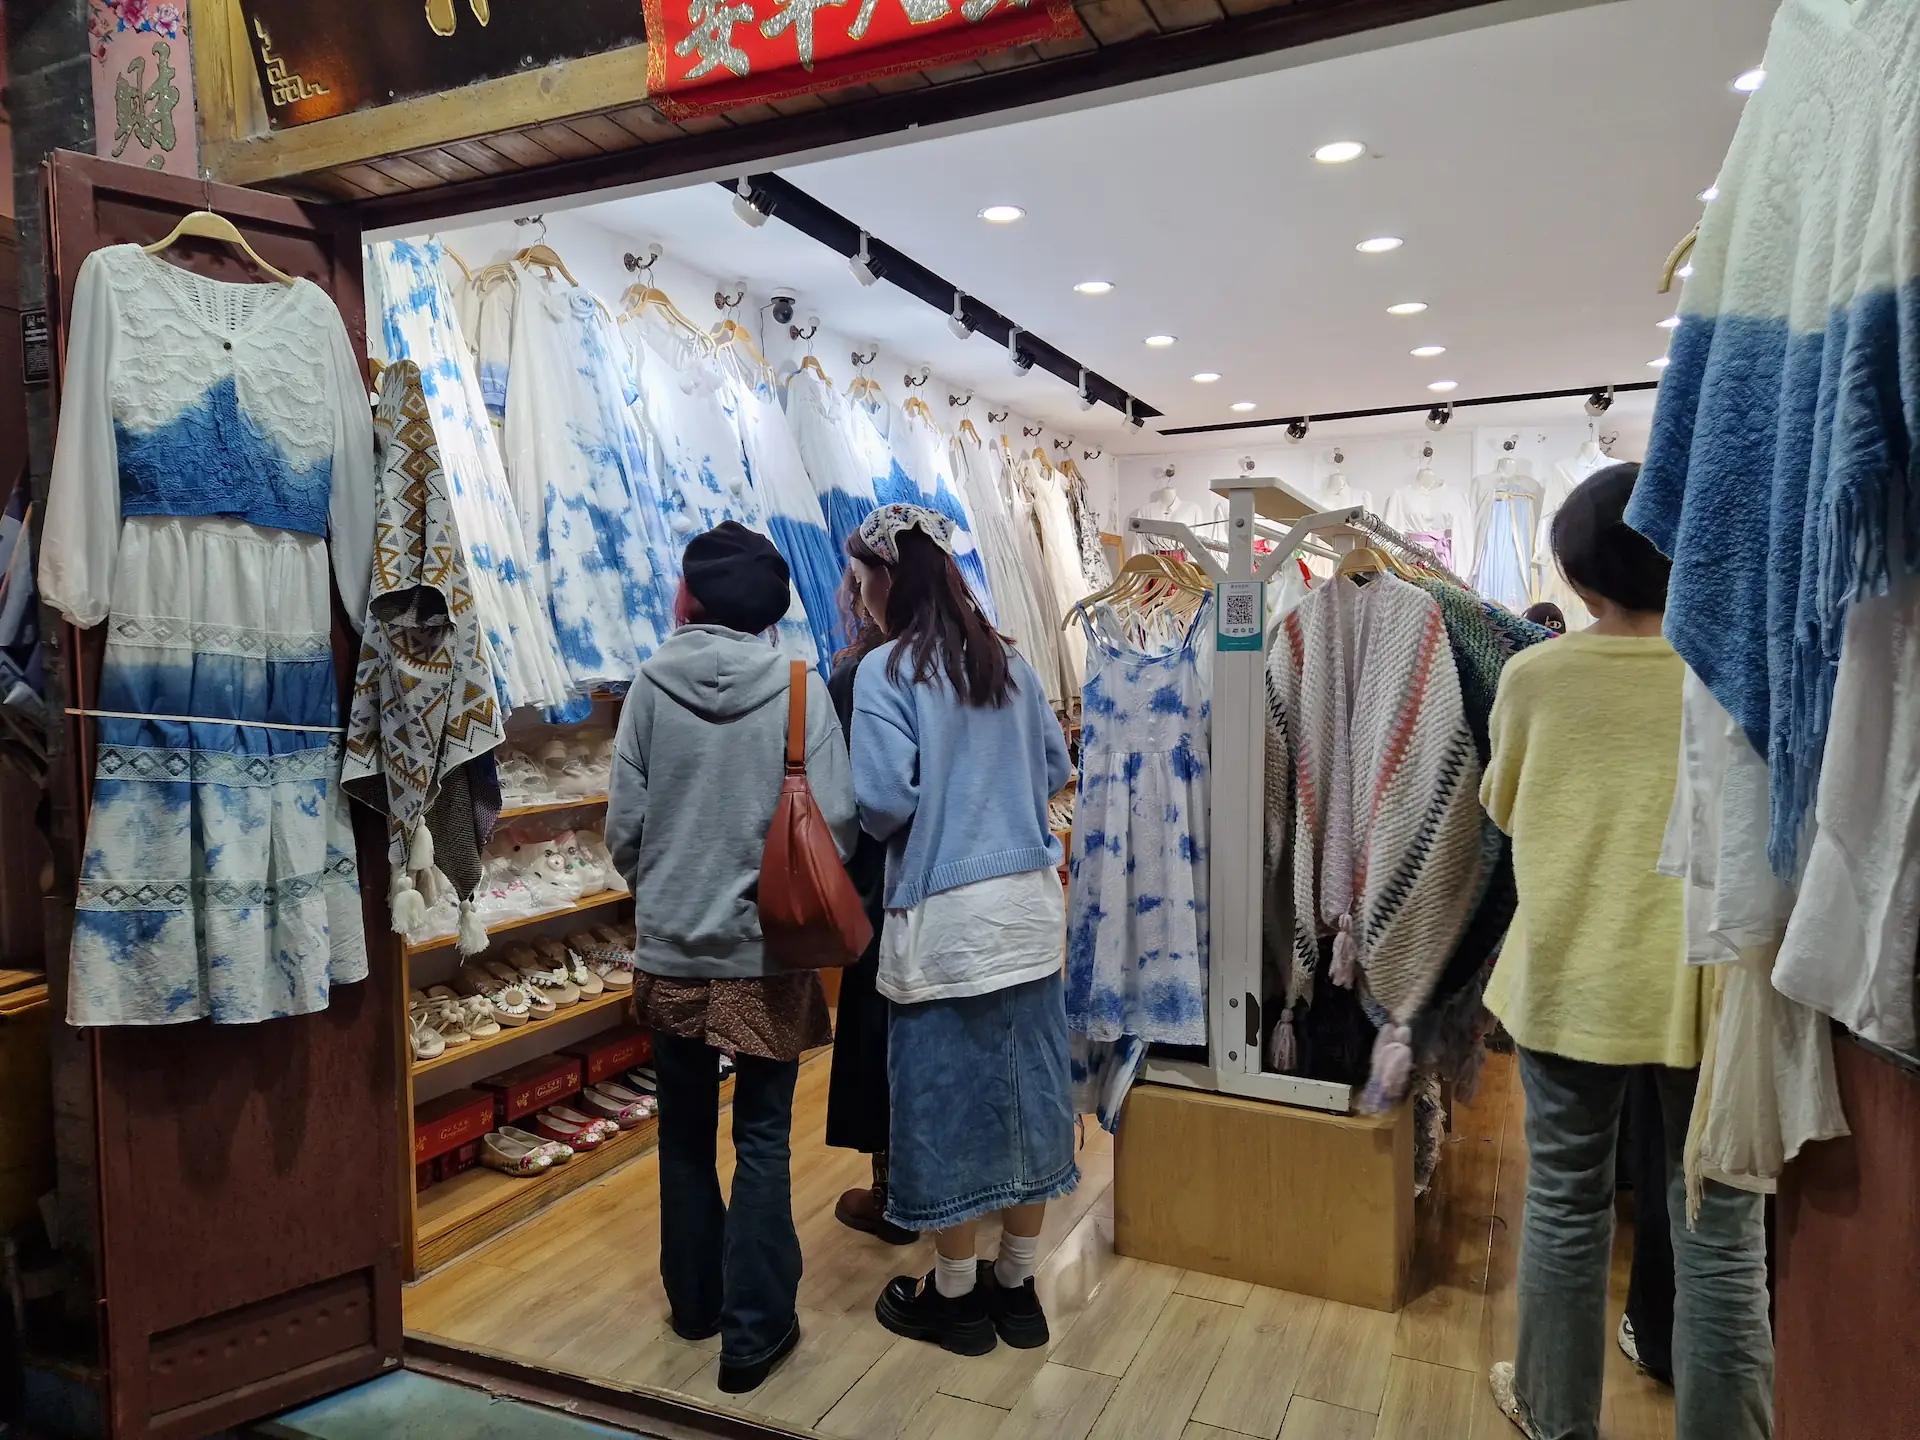 Un magasin d'habits 'hippies' teints en bleu et blanc. On voit des robes légères et des ponchos tissés. 